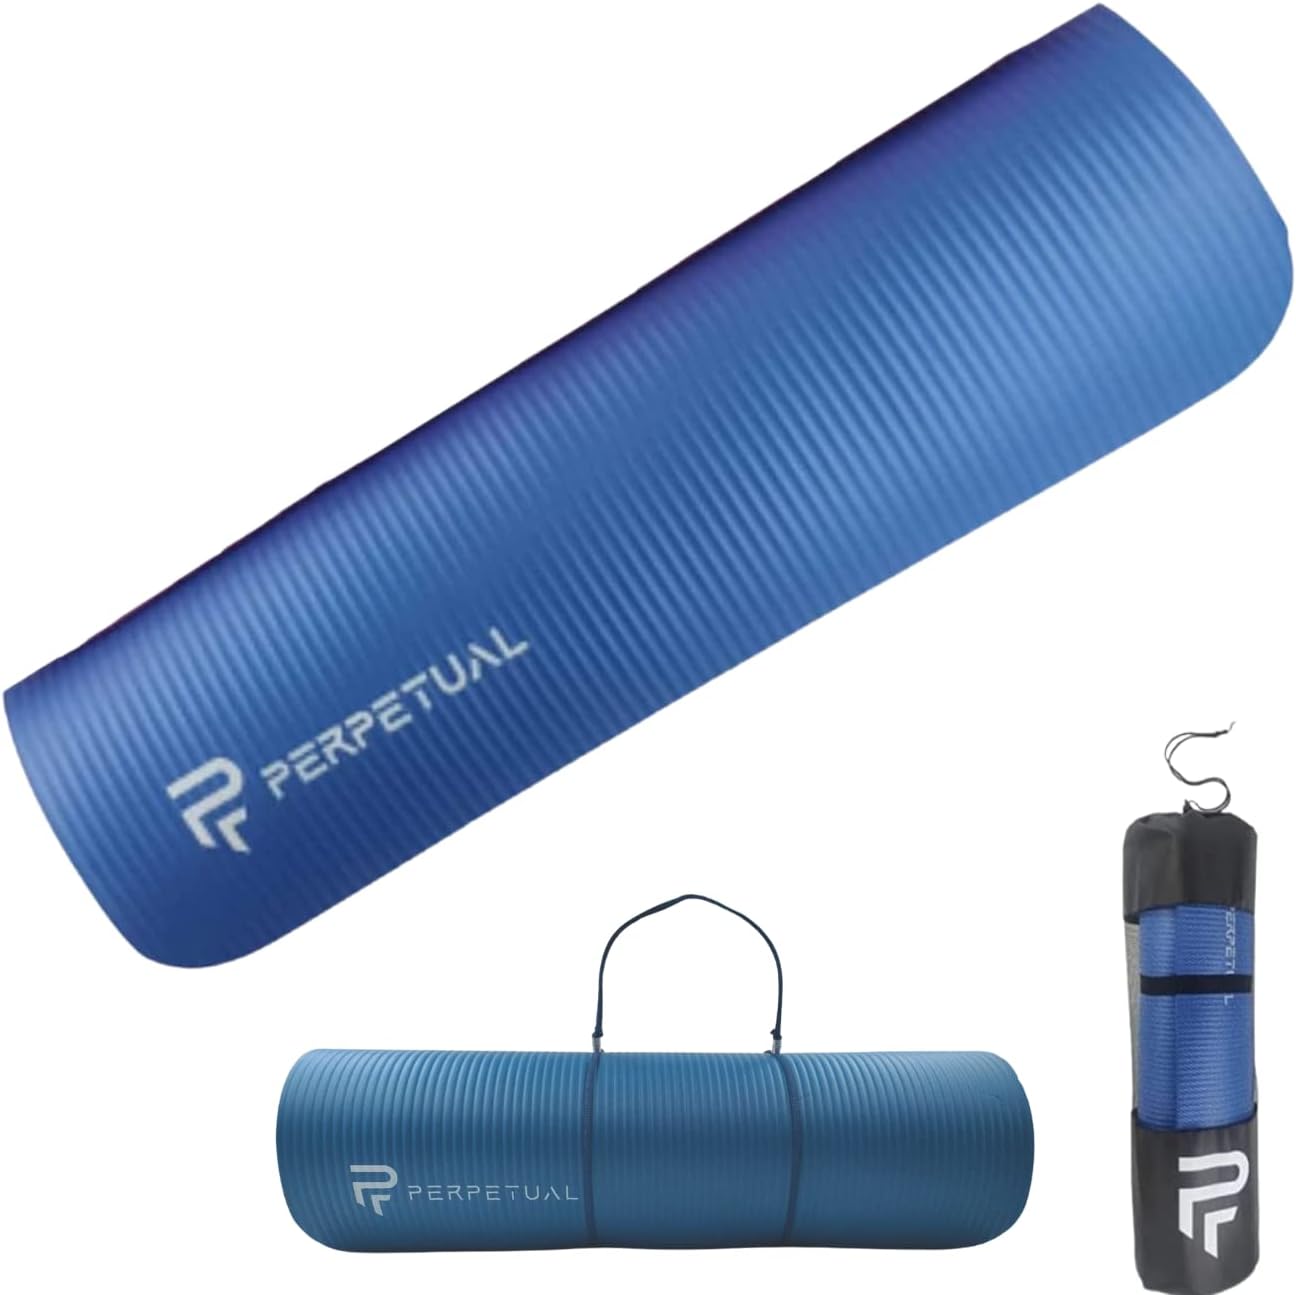 Esterilla De Yoga Y Pilates Antideslizante De 10mm Perpetual Con Correa Y Bolsa De Transporte - azul - 